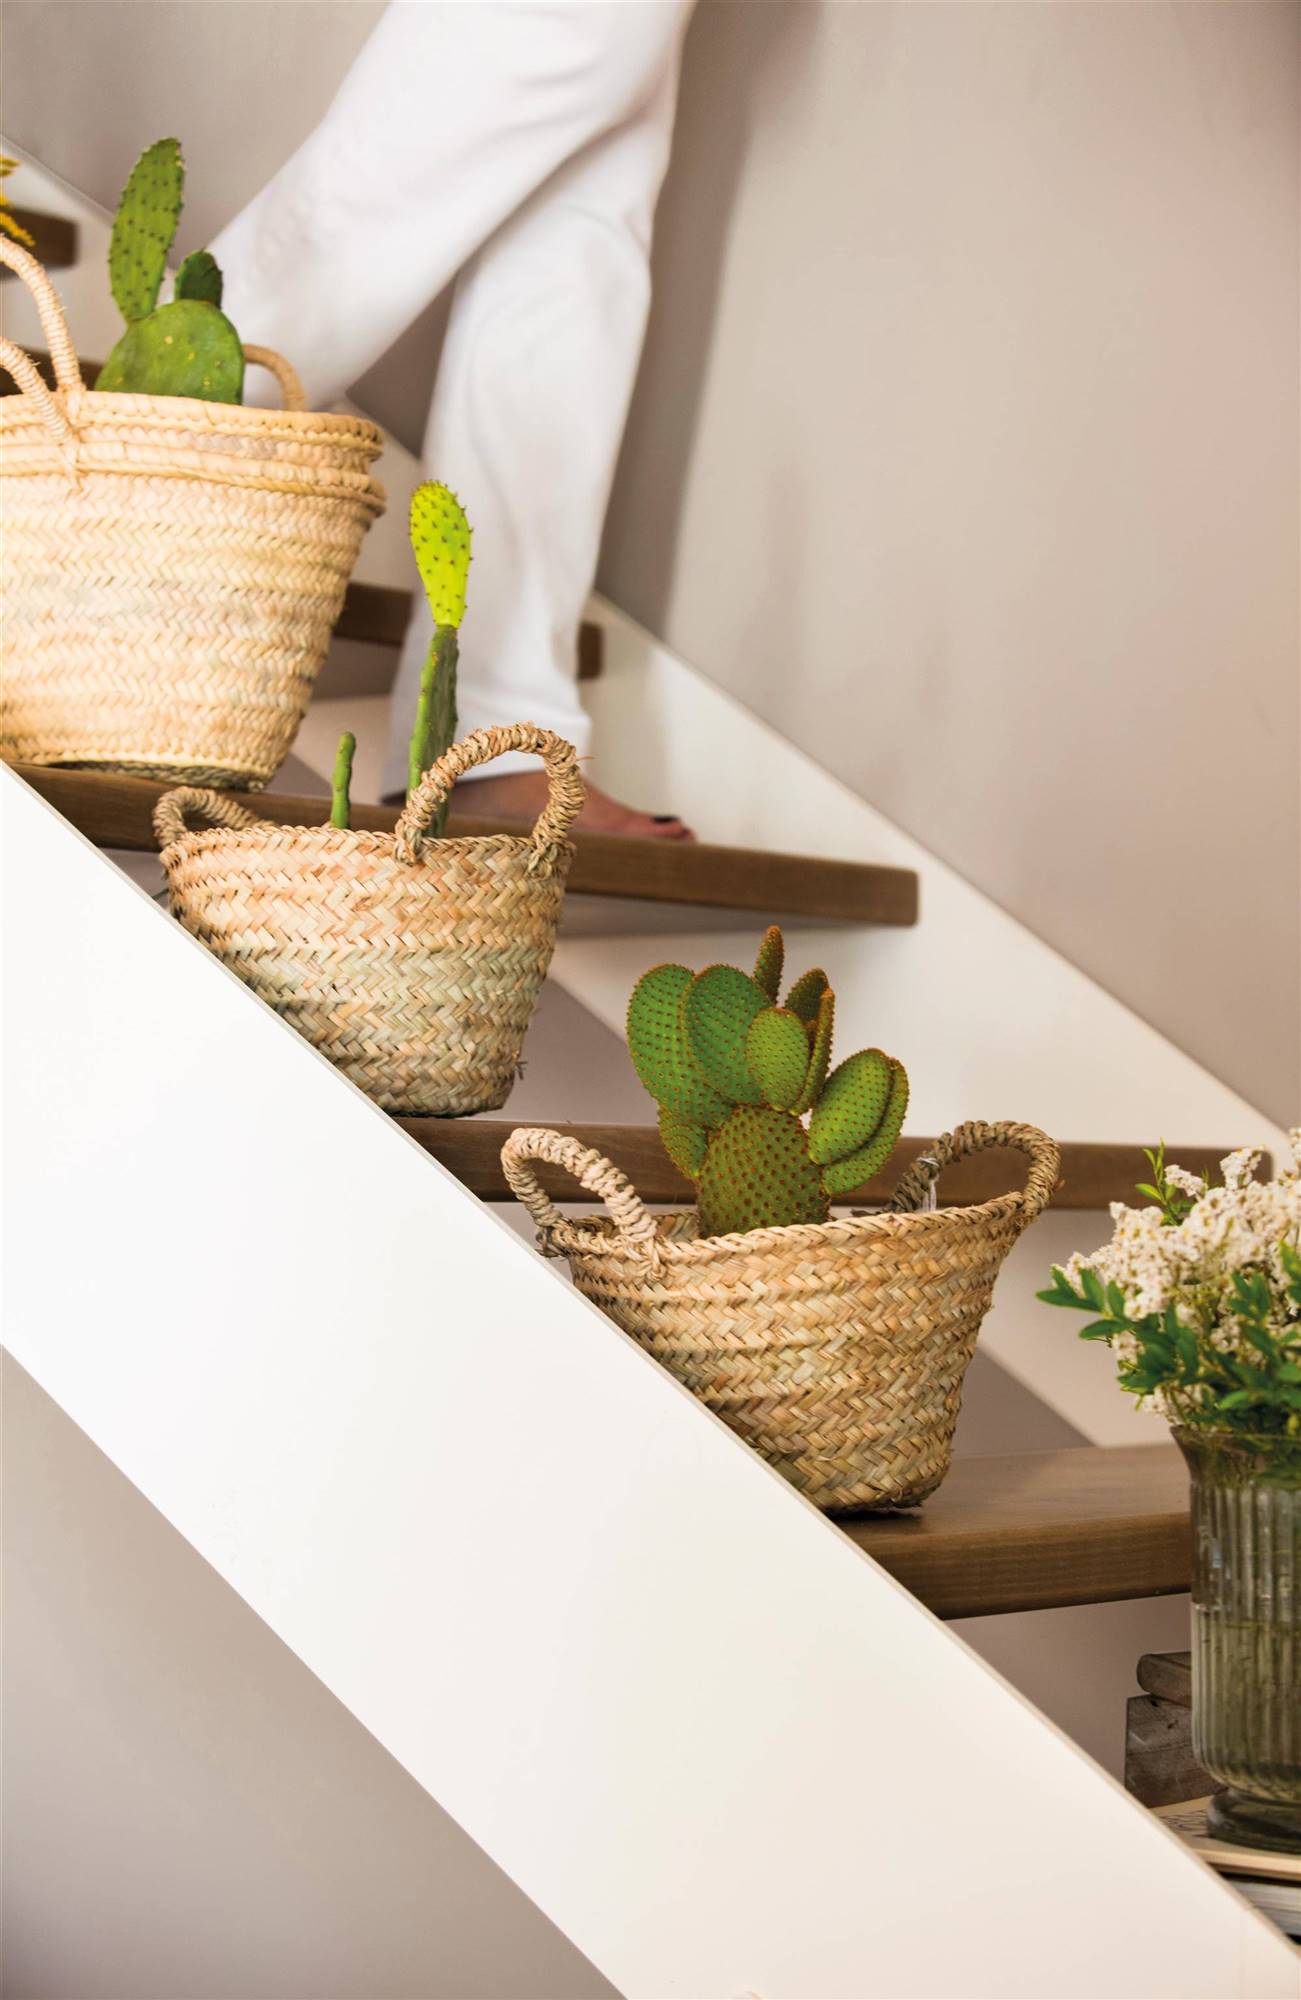 Escaleras con peldaños decorados con cestas con plantas.